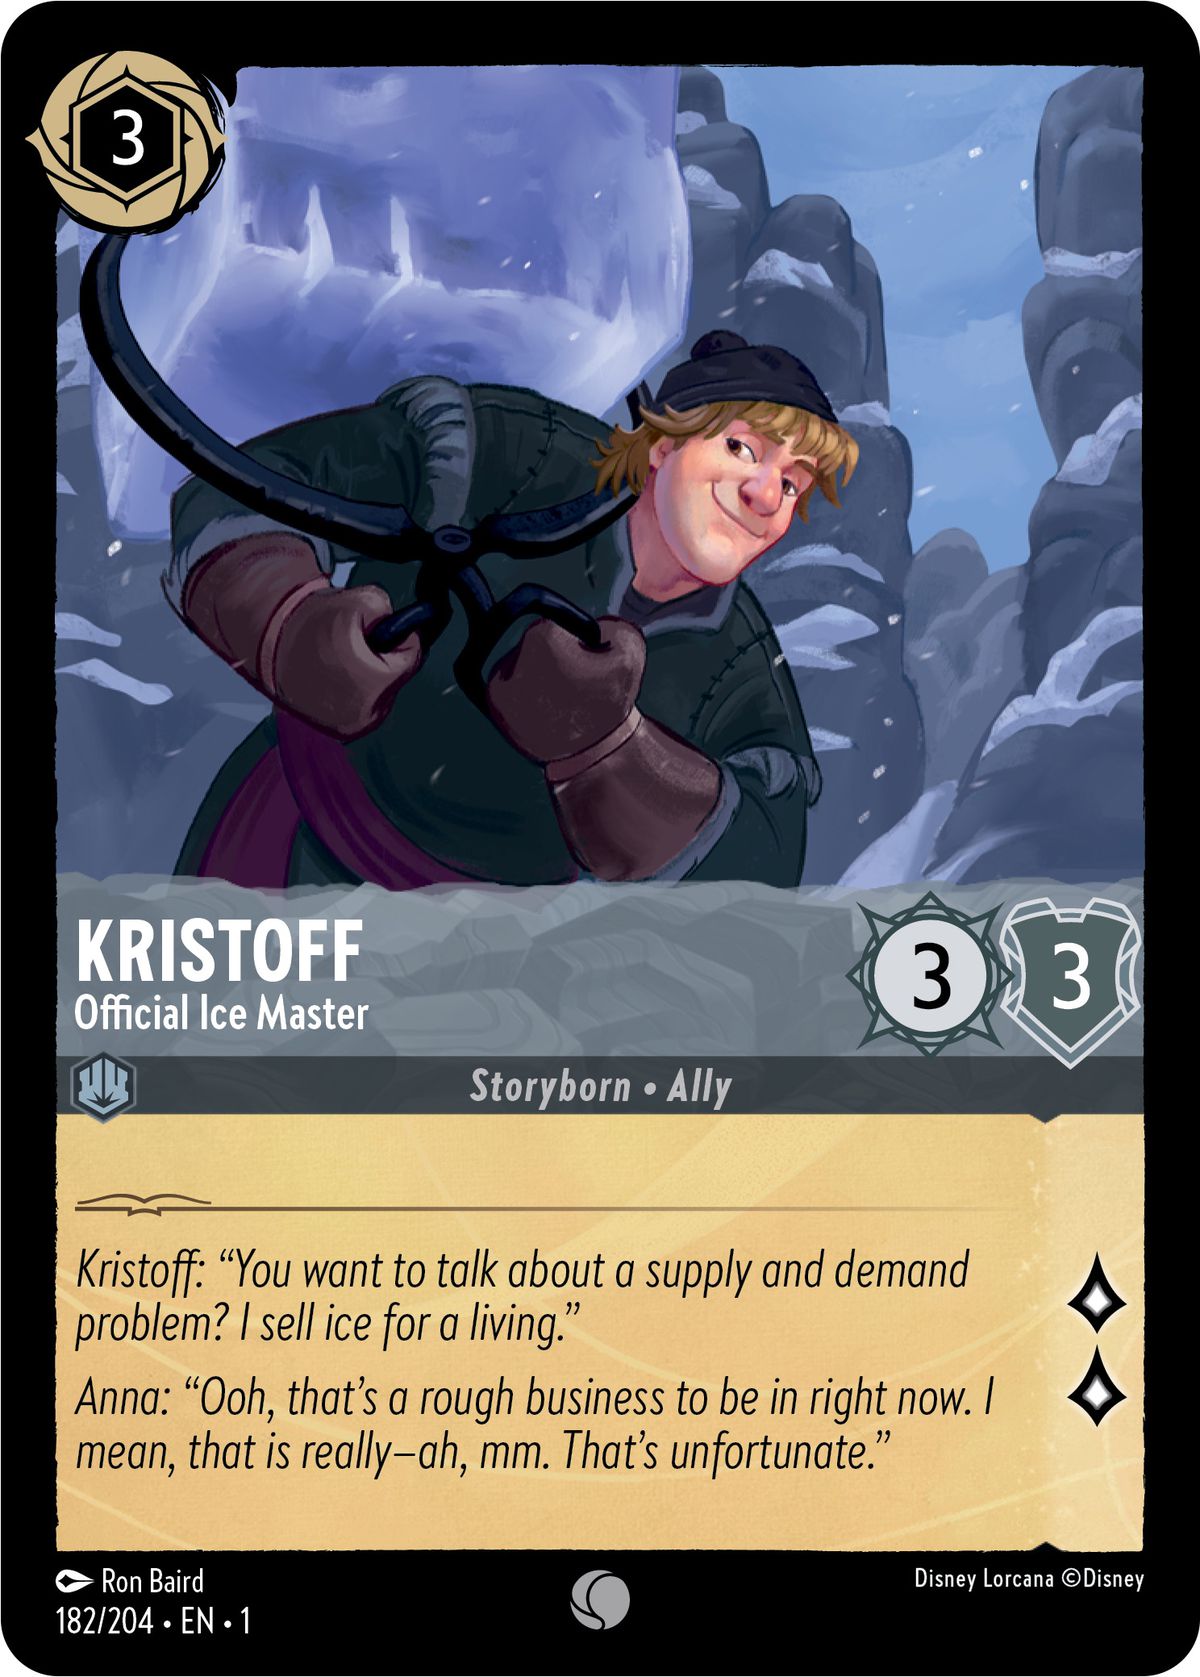 Kristoff, maître de glace officiel, est une lueur 3/3 – un allié né dans l'histoire – qui peut être jouée à la table pour 3 encres.  Il génère deux connaissances lors de la quête.